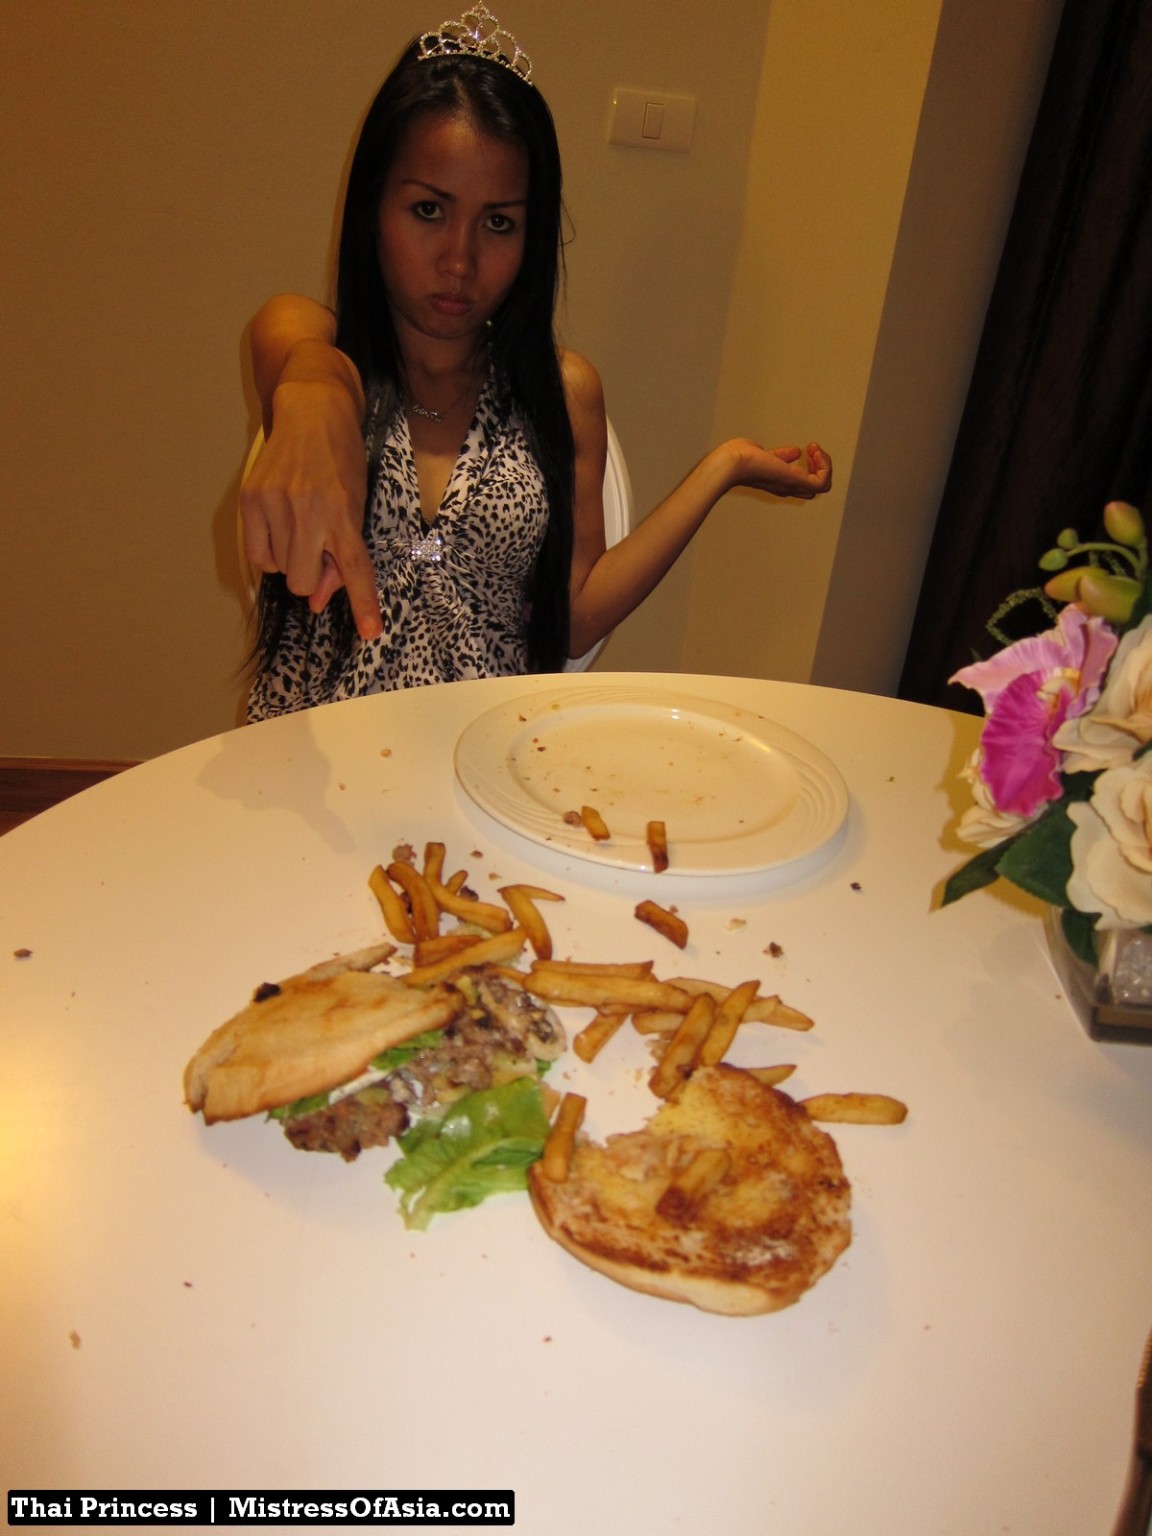 Princesa tailandesa comiendo hamburguesa
 #69740320